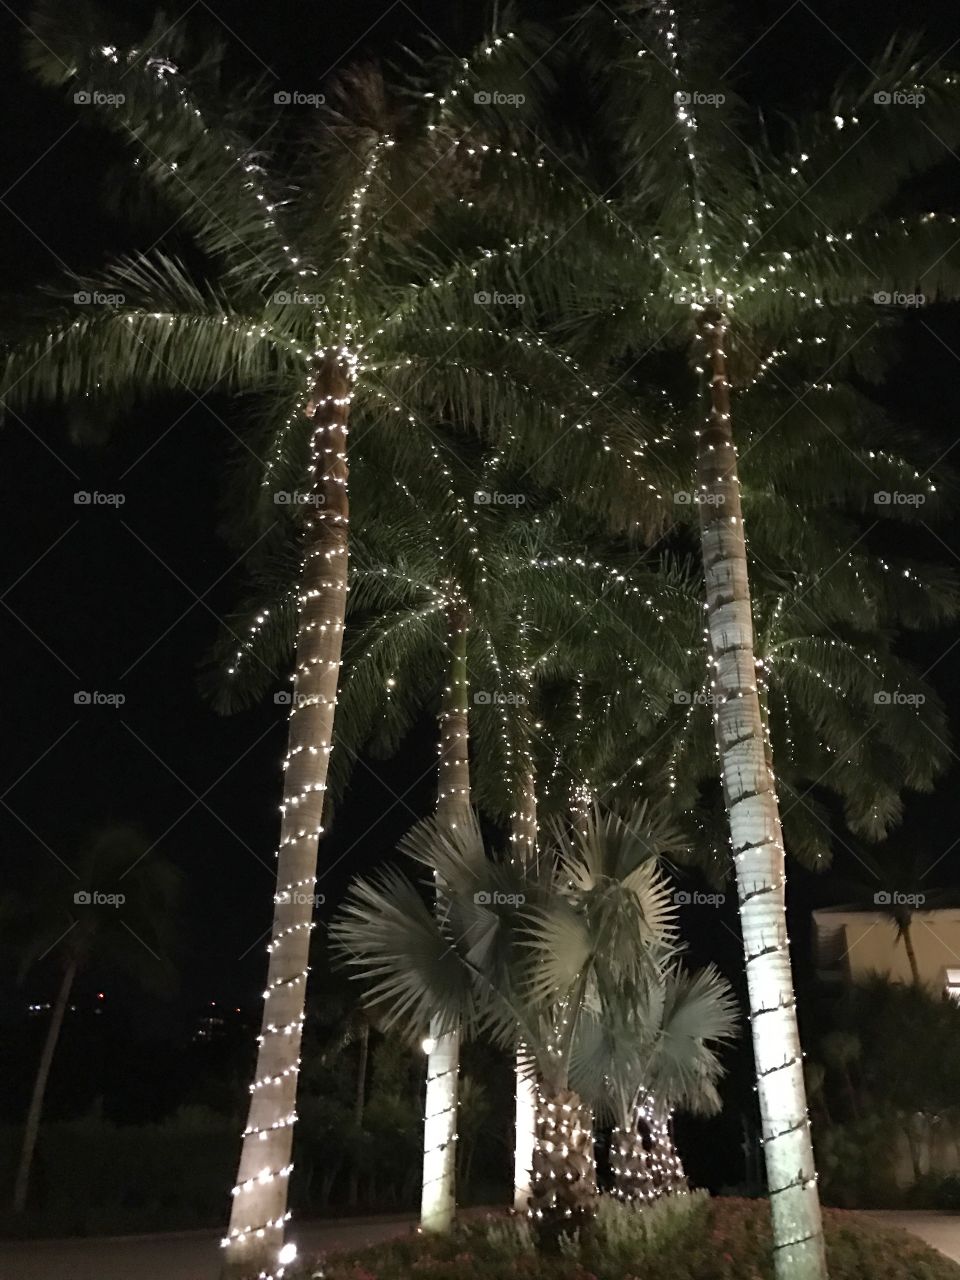 Christmas Palms